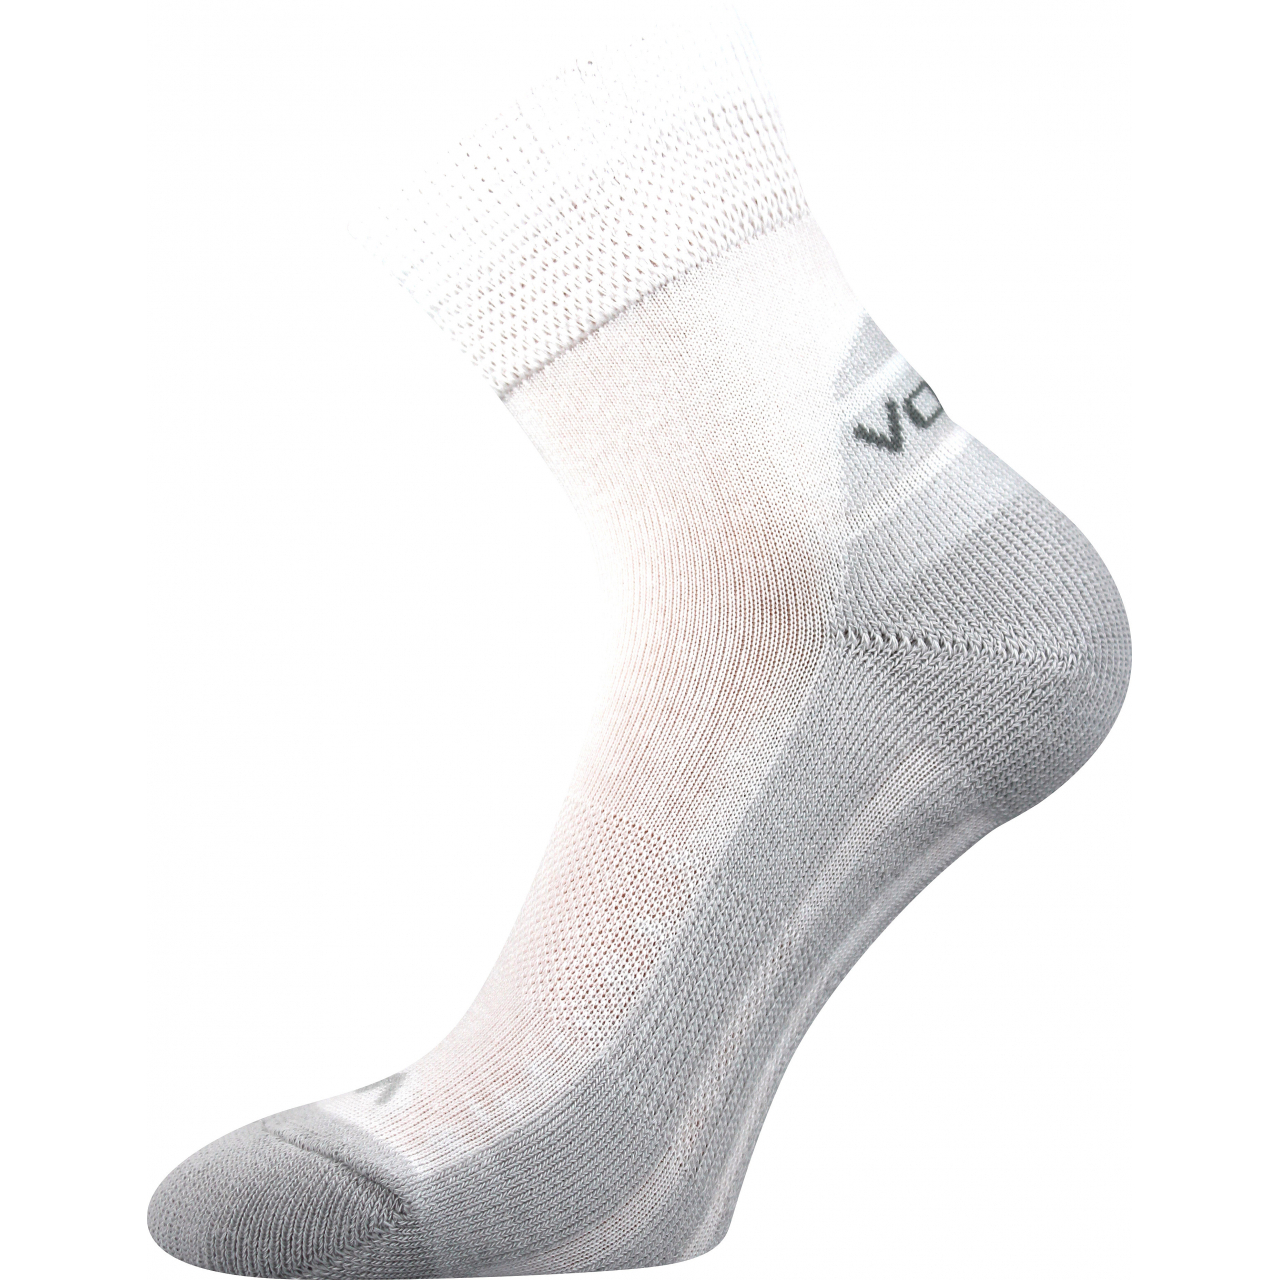 Ponožky sportovní Voxx Oliver - bílé-šedé, 35-38